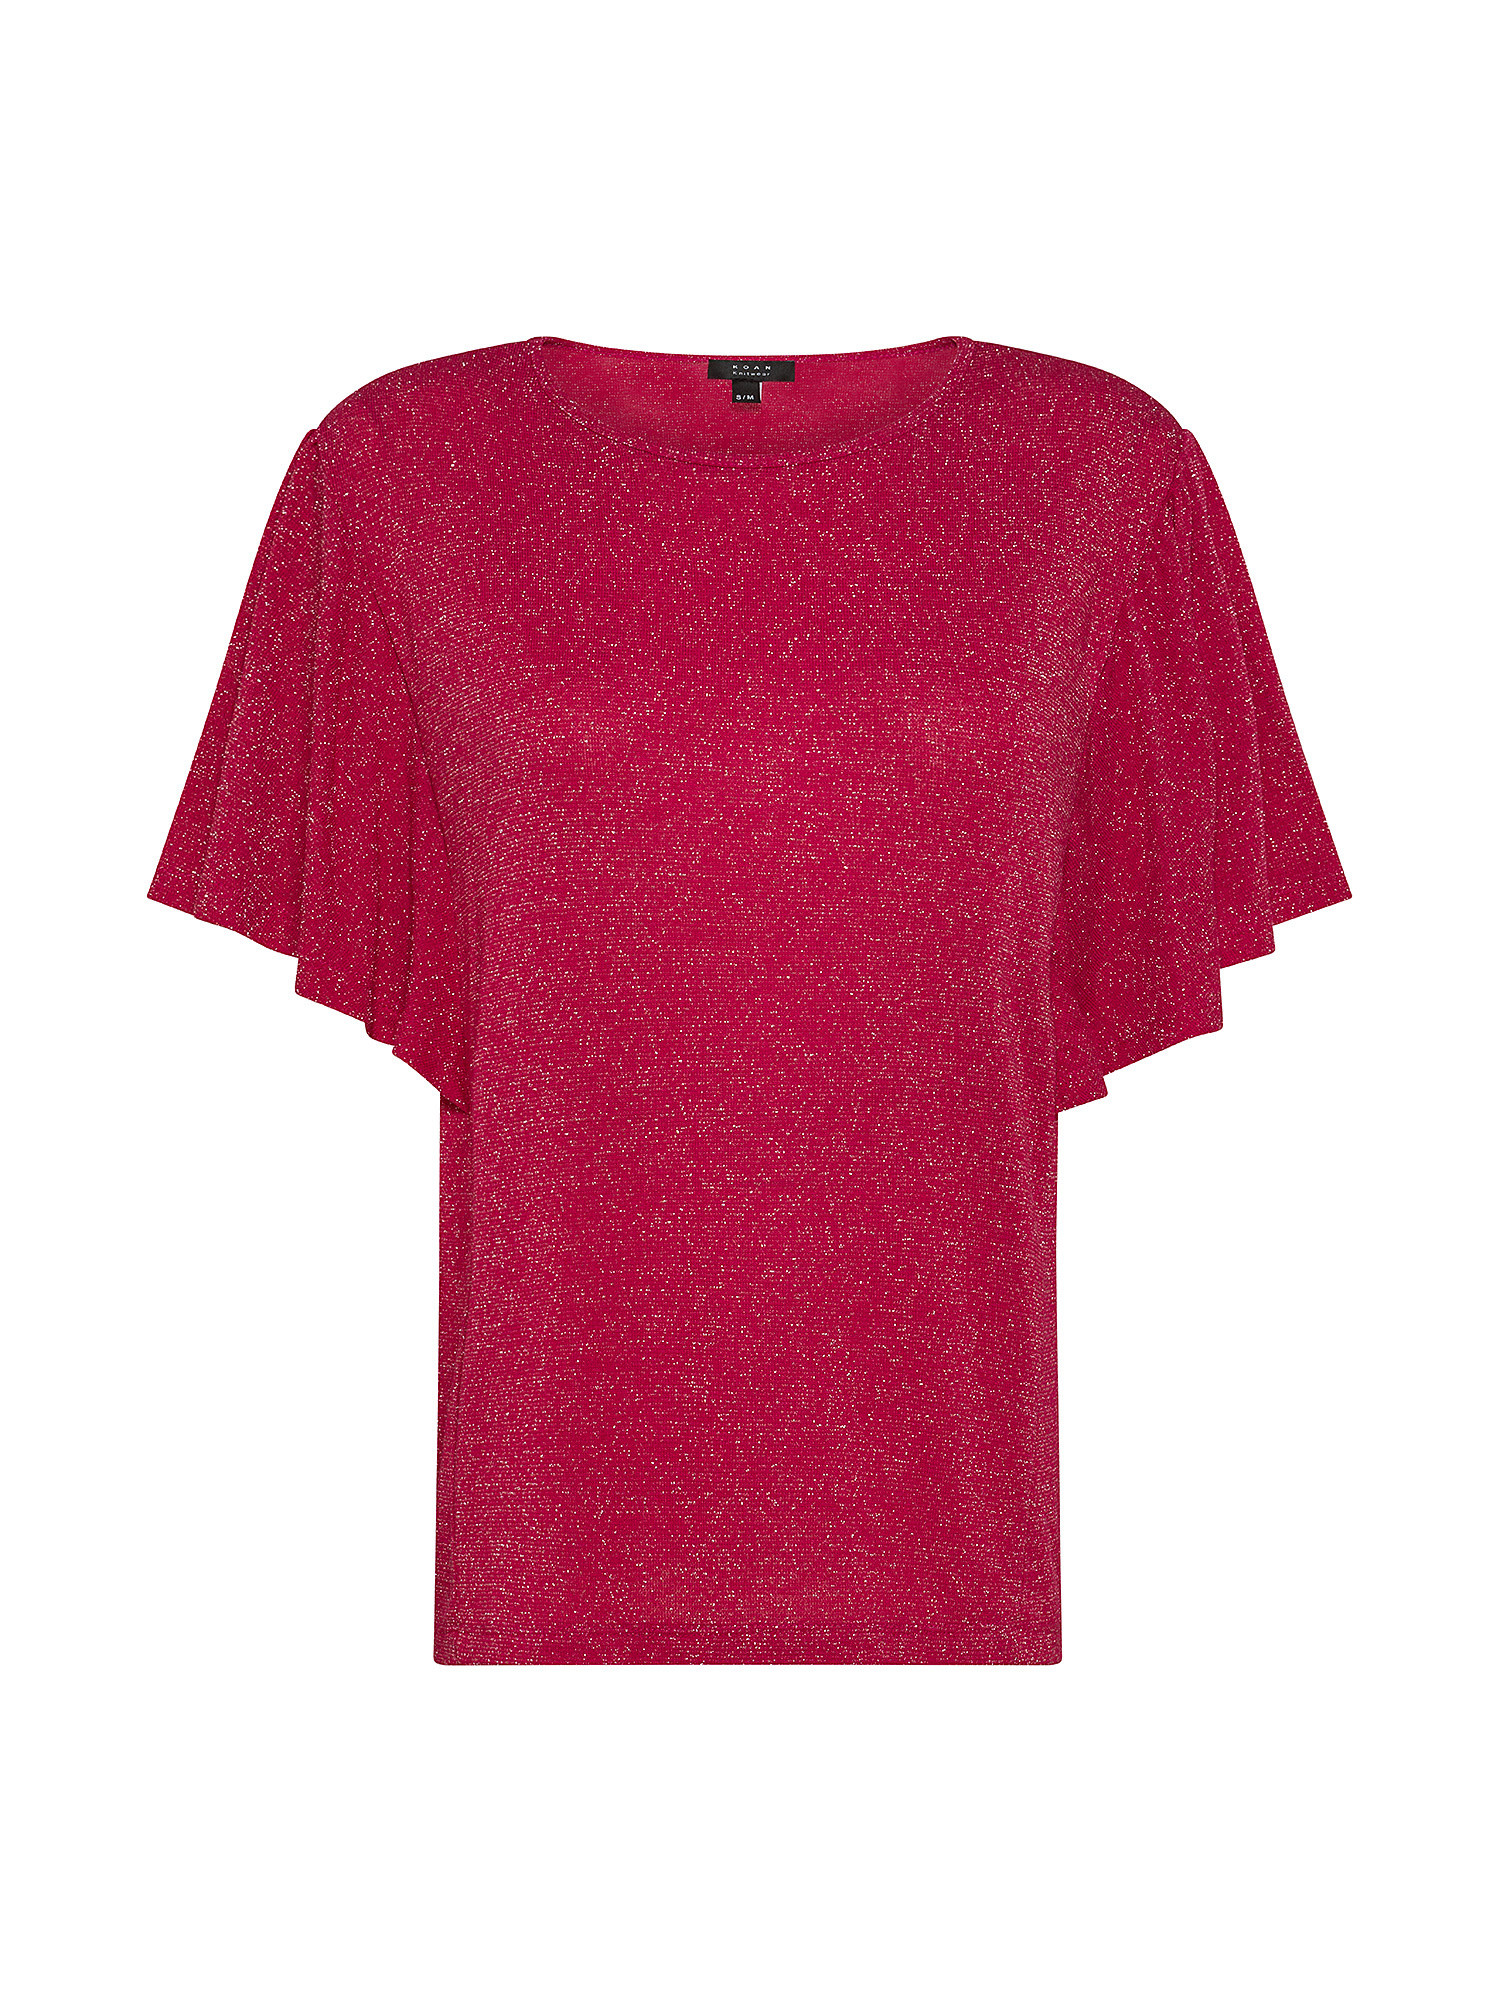 Bat sleeve T-shirt, Pink Fuchsia, large image number 0